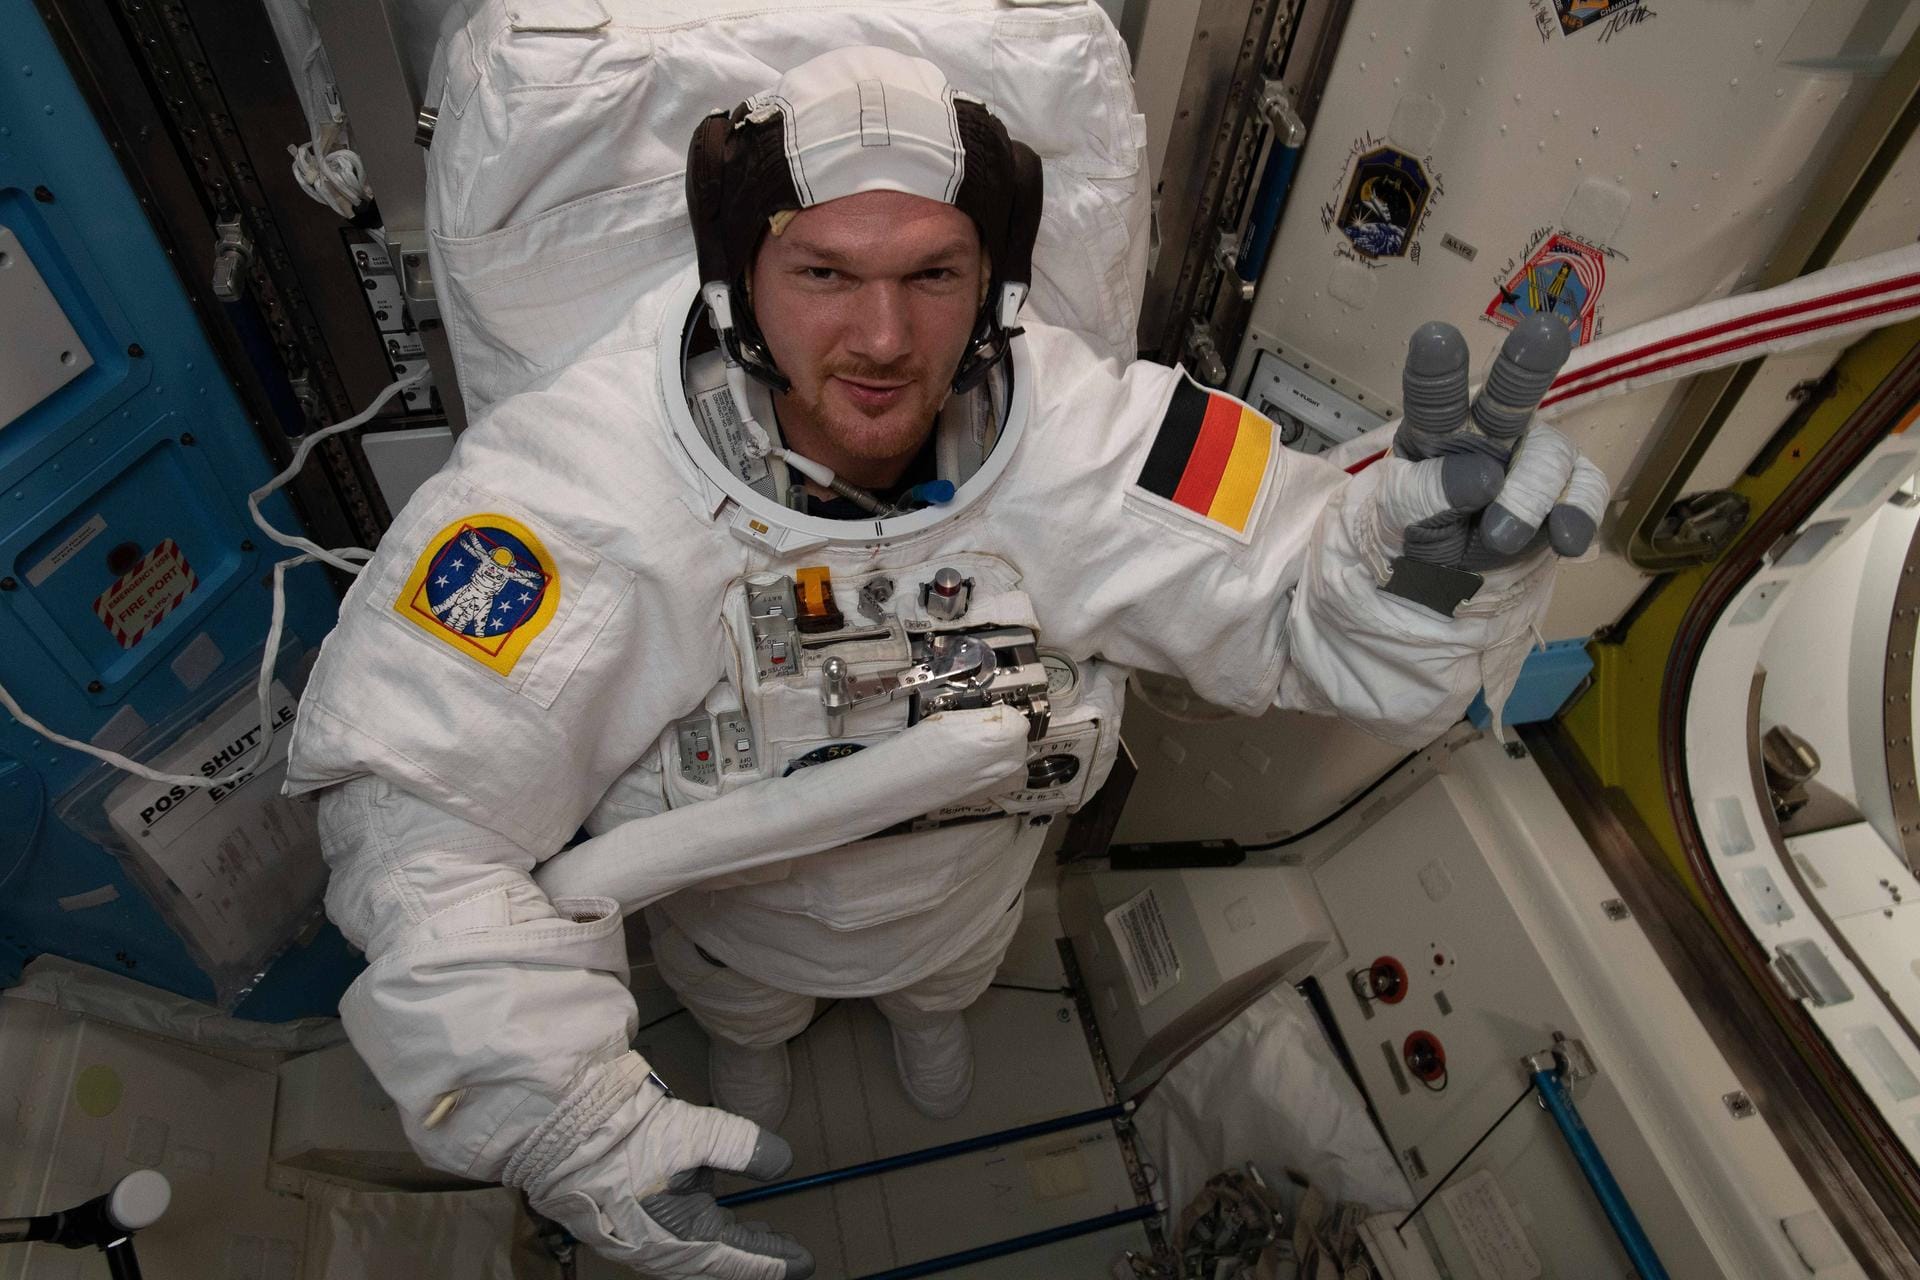 Grundlagen-Check: Passt der Bauch noch rein? Hier sehen wir unseren Astronauten beim Anprobieren seines Raumanzuges.